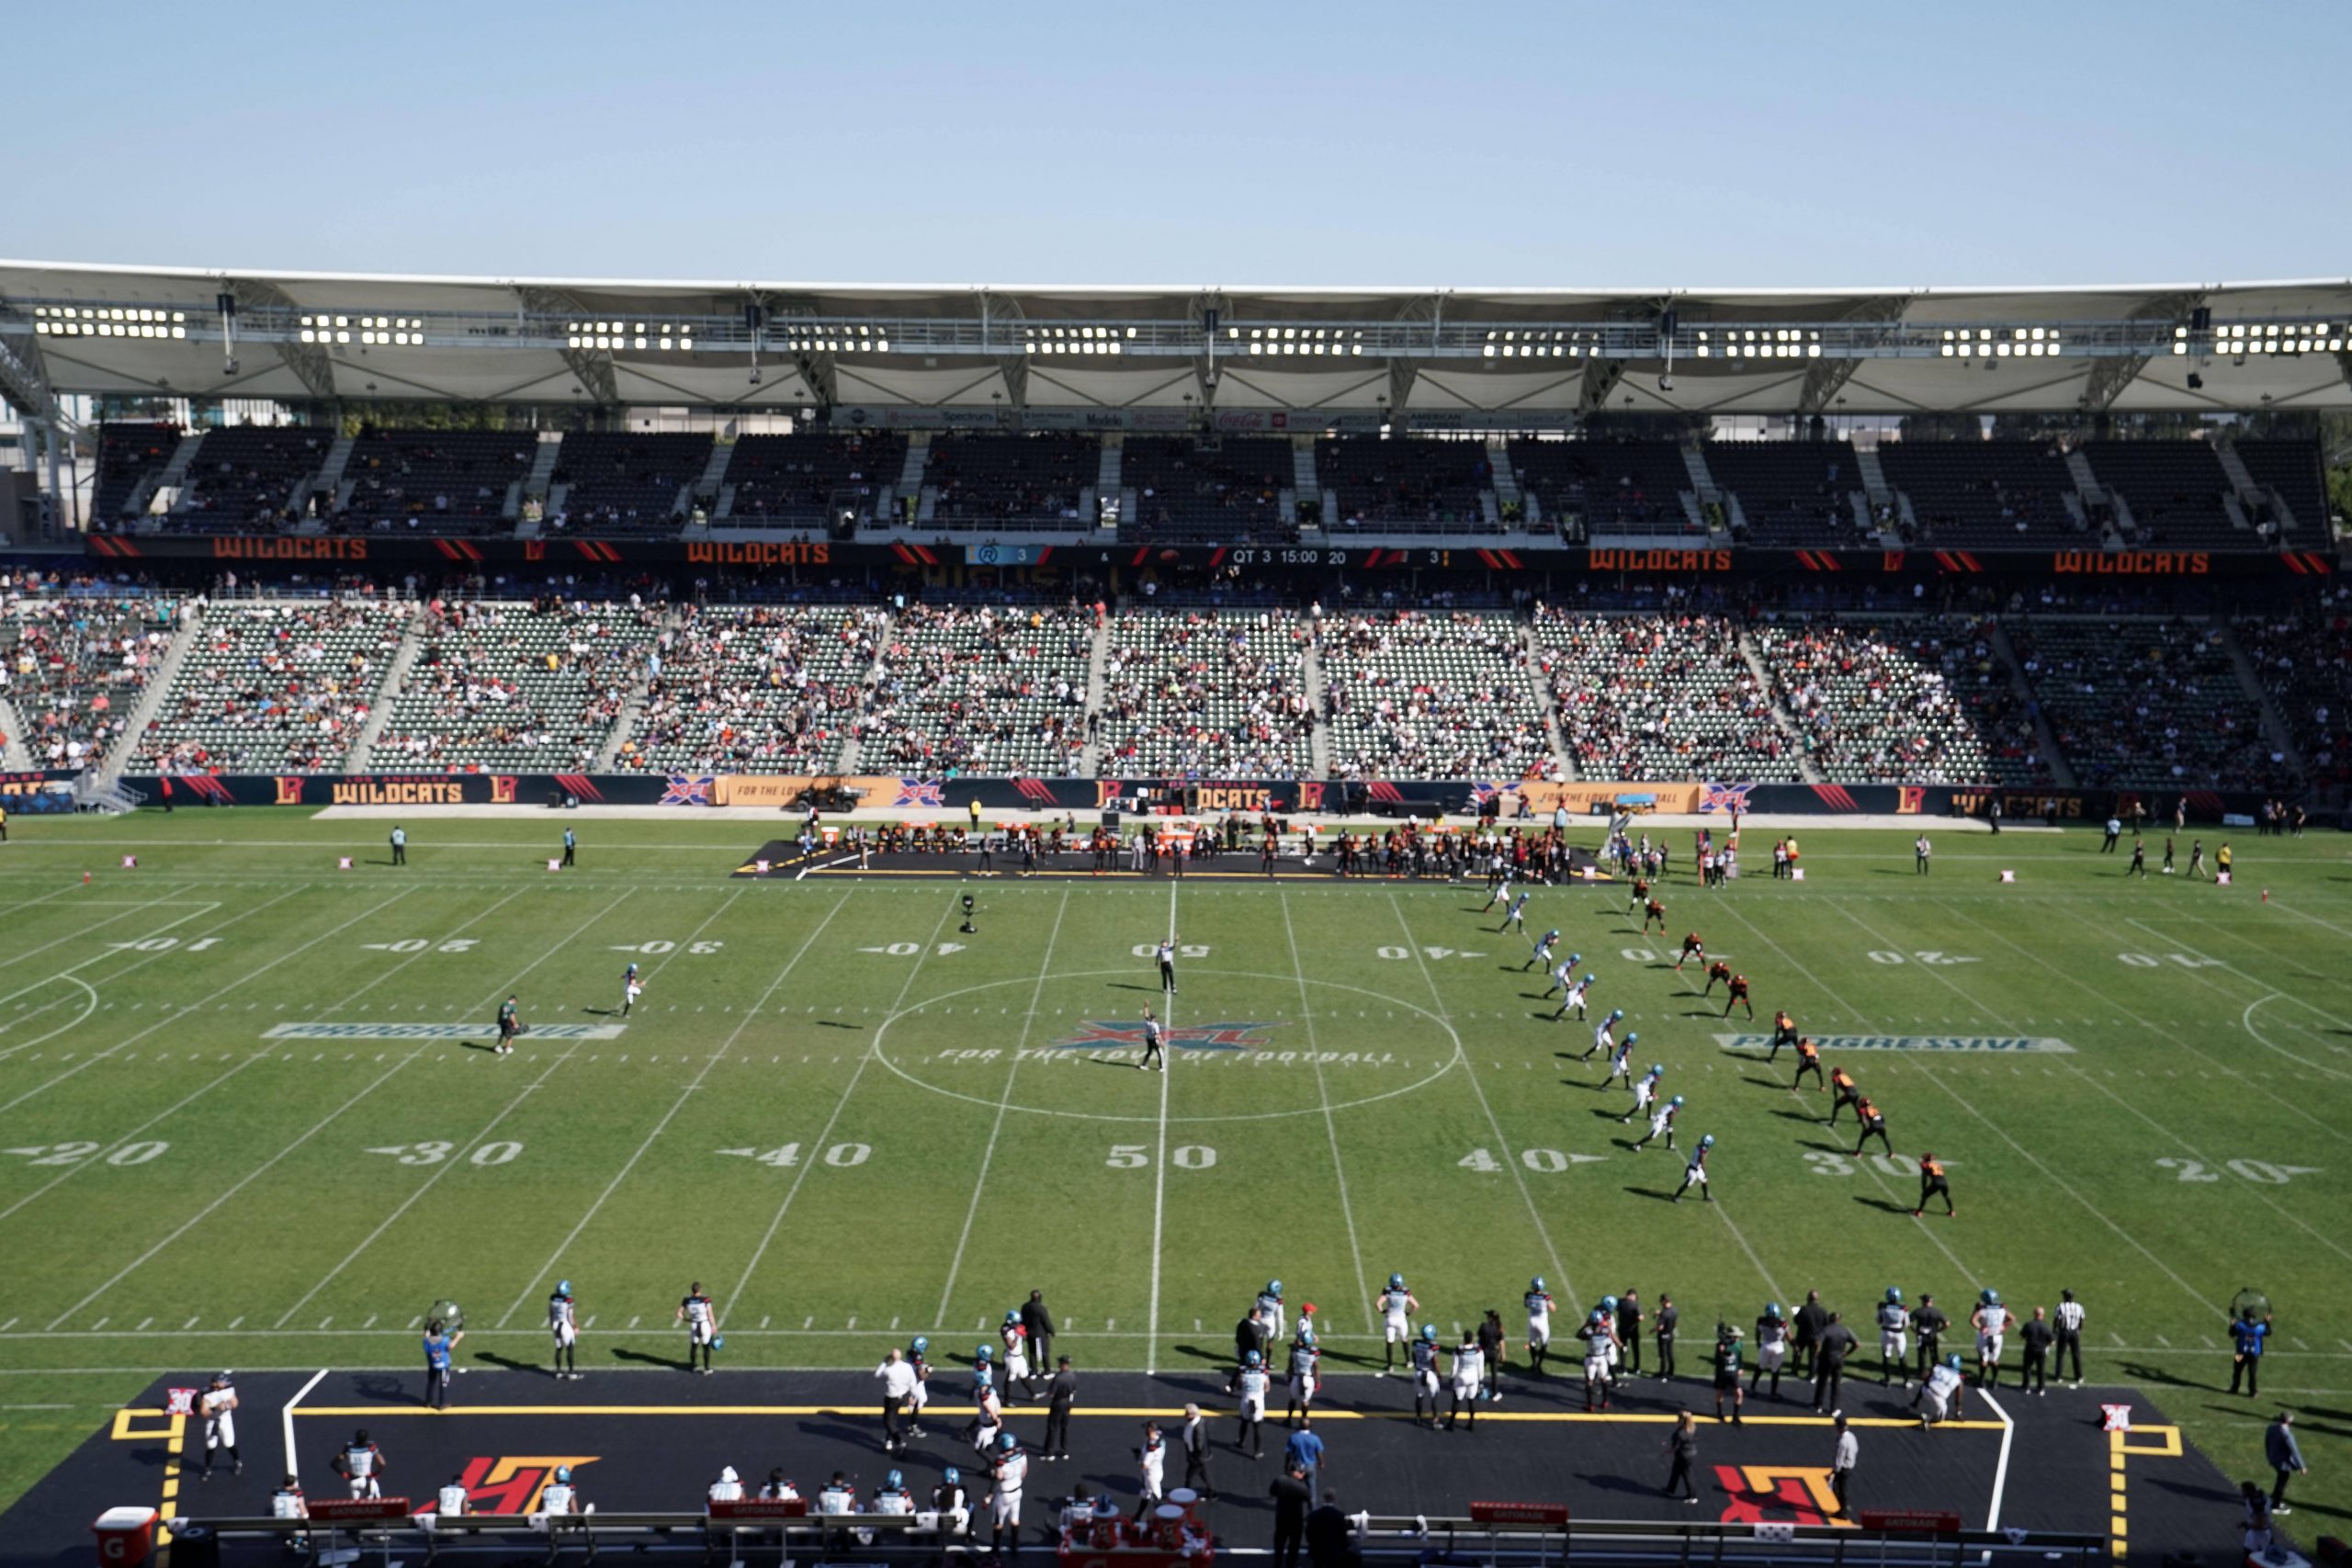 FootballR - NFL Regeländerungen - Kickoff - In einem Stadion findet gerade ein American-Football-Spiel statt, die Mannschaften stehen für den Anpfiff auf dem Spielfeld aufgereiht und die Tribünen sind unter strahlend blauem Himmel mit Zuschauern gefüllt. Diese Beschreibung wurde automatisch generiert.